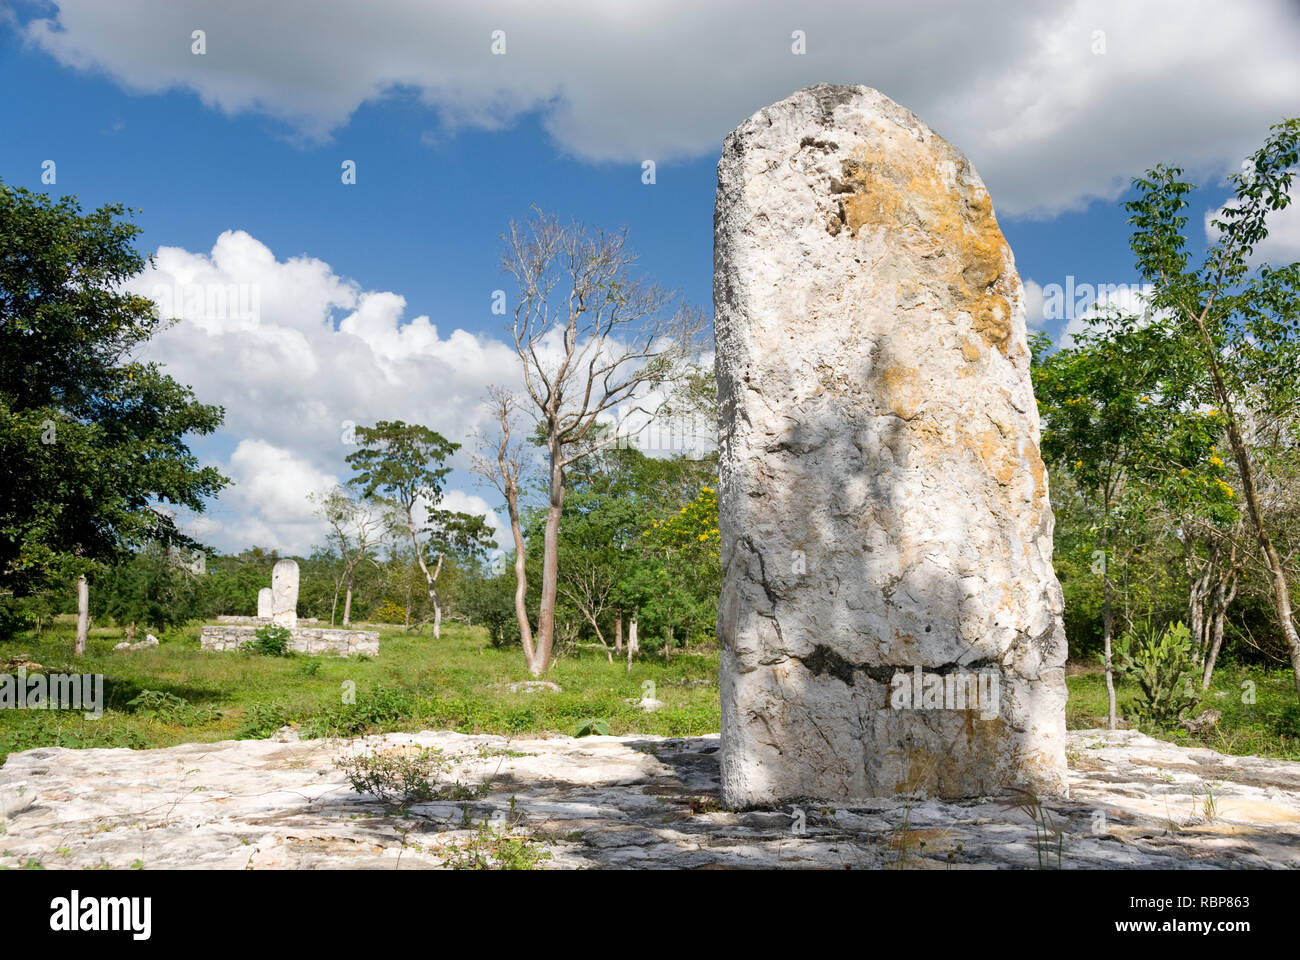 Mexiko - Jan 16 2007: Stele stehend oder Marker Stein auf SACBE 1 Main Route durch die Maya archäologische Komplex Dzibilchaltún, in der Nähe von Merida Stockfoto